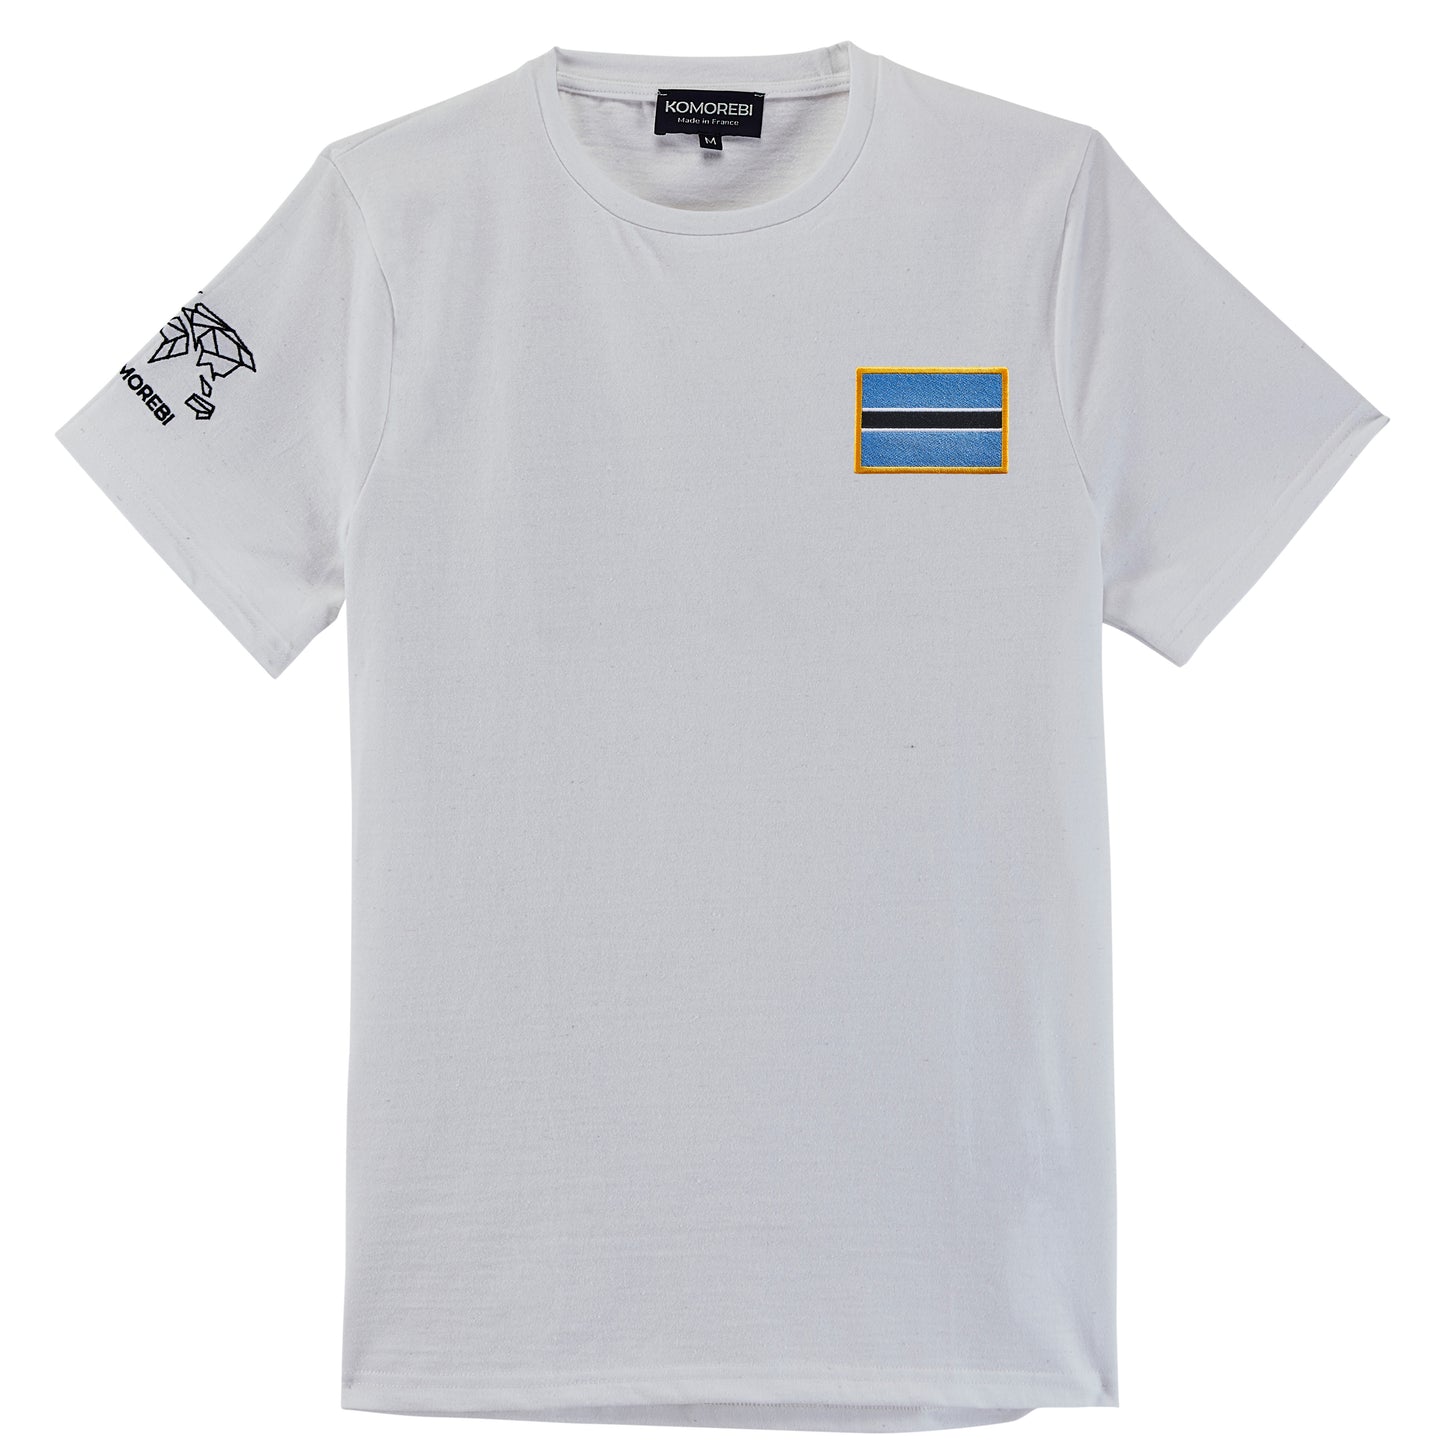 Botswana - flag t-shirt